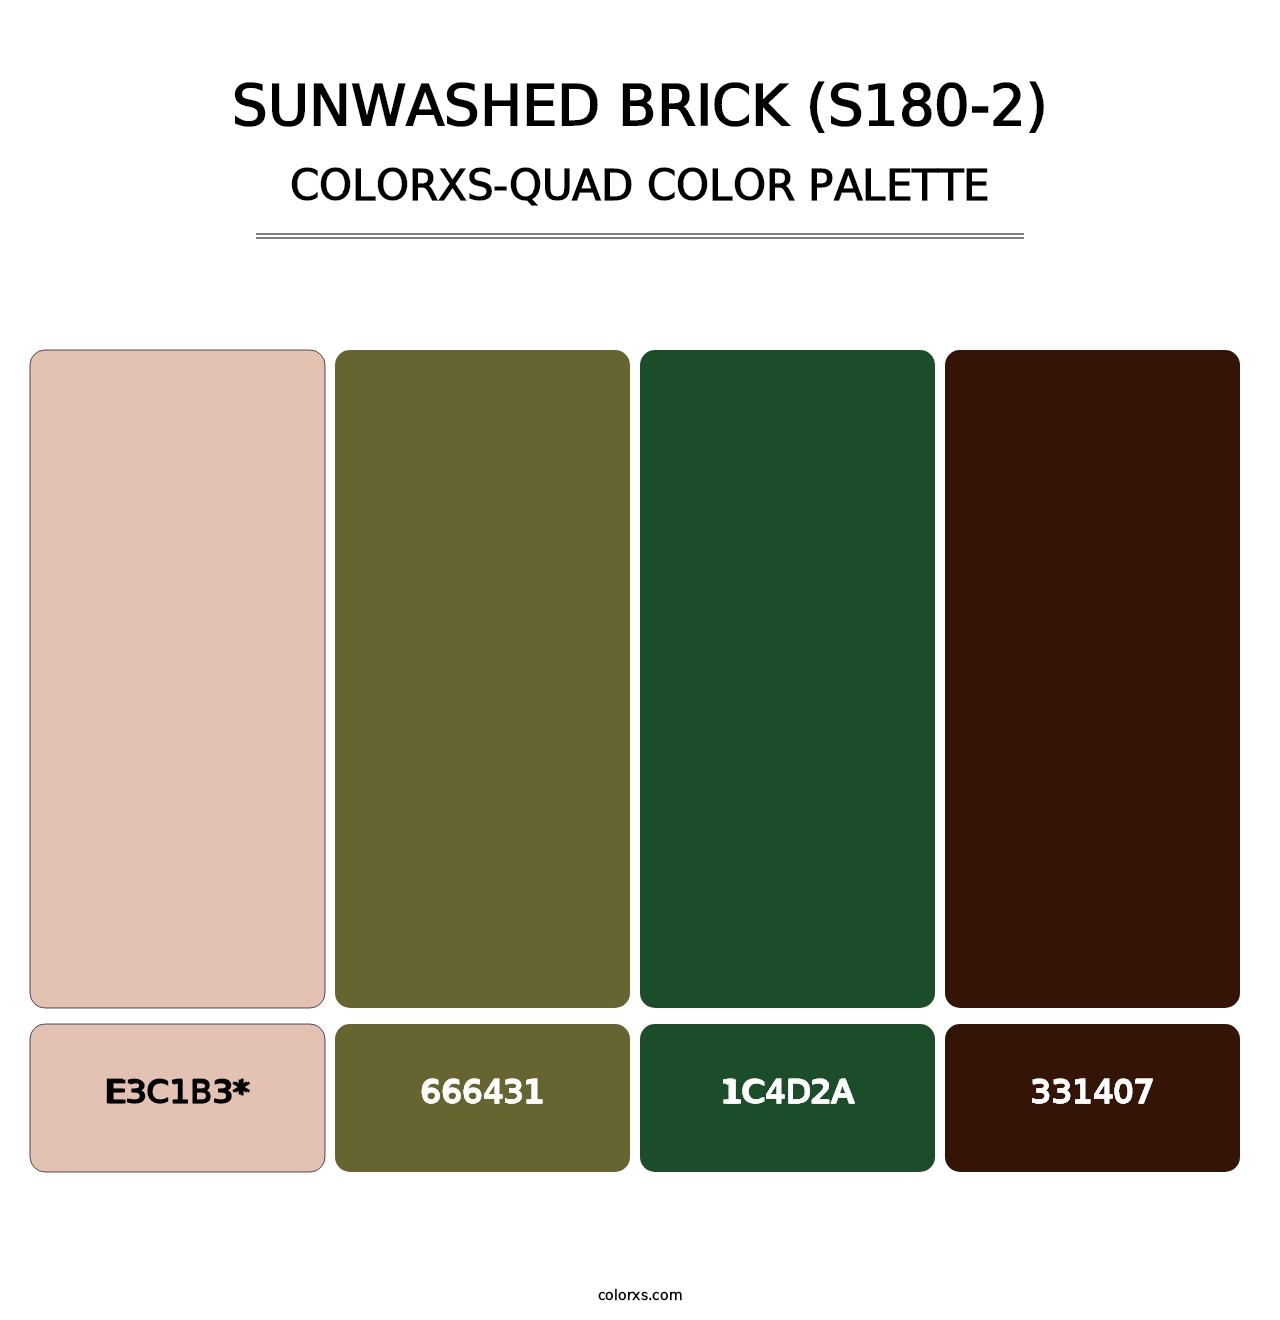 Sunwashed Brick (S180-2) - Colorxs Quad Palette